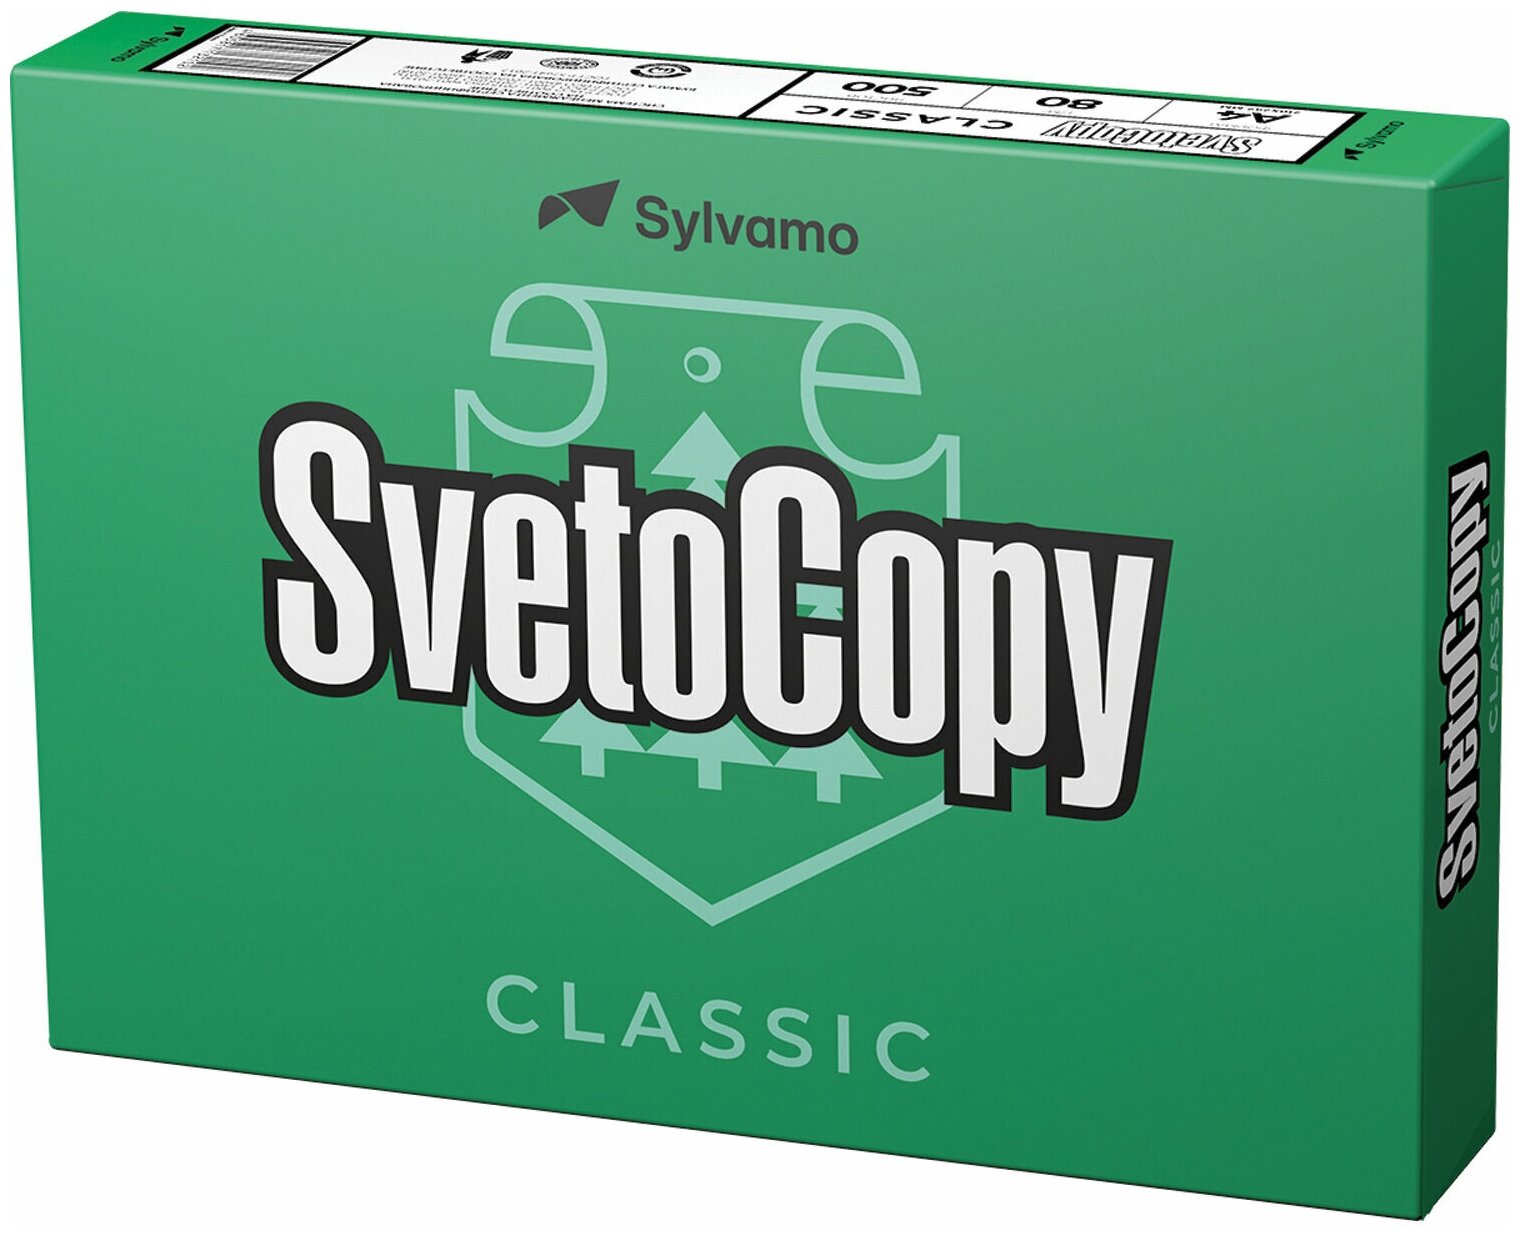 Бумага офисная SvetoCopy CLASSIC, А4, 80 г/м2, 500 л марка С, International Paper, белизна 146%.